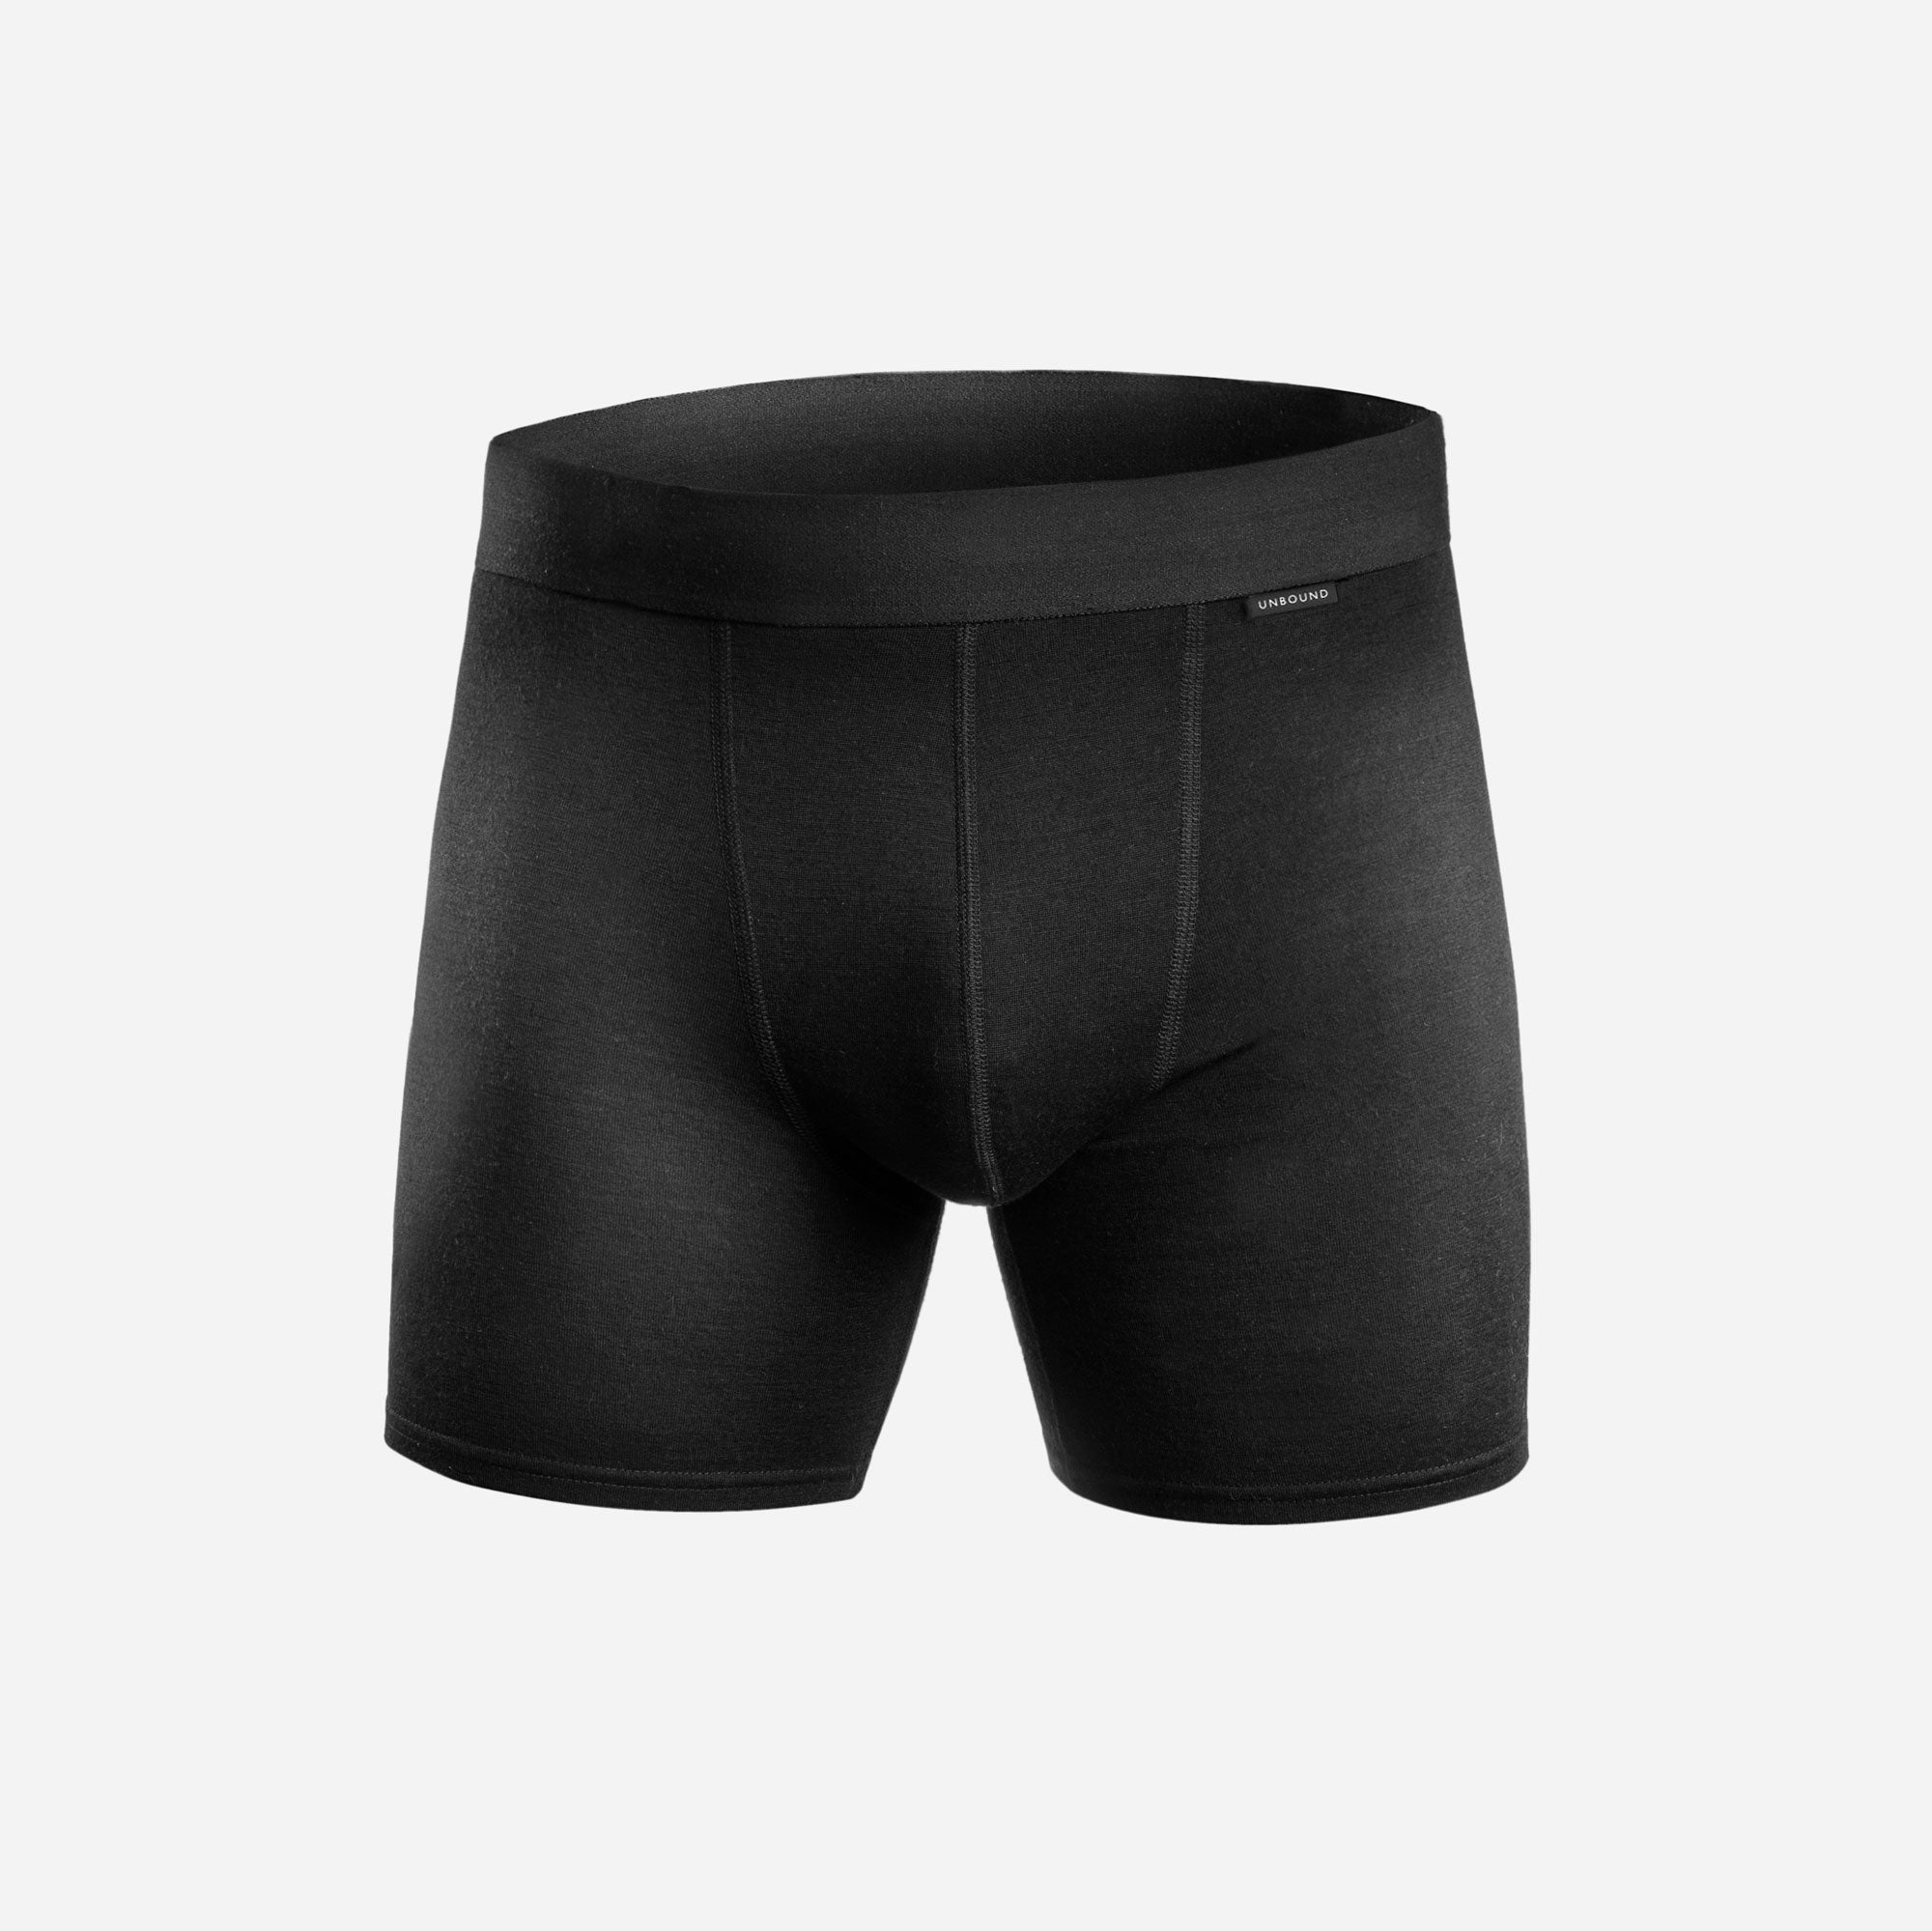 Merino Wool Underwear & Boxer Briefs For Men | Unbound Merino